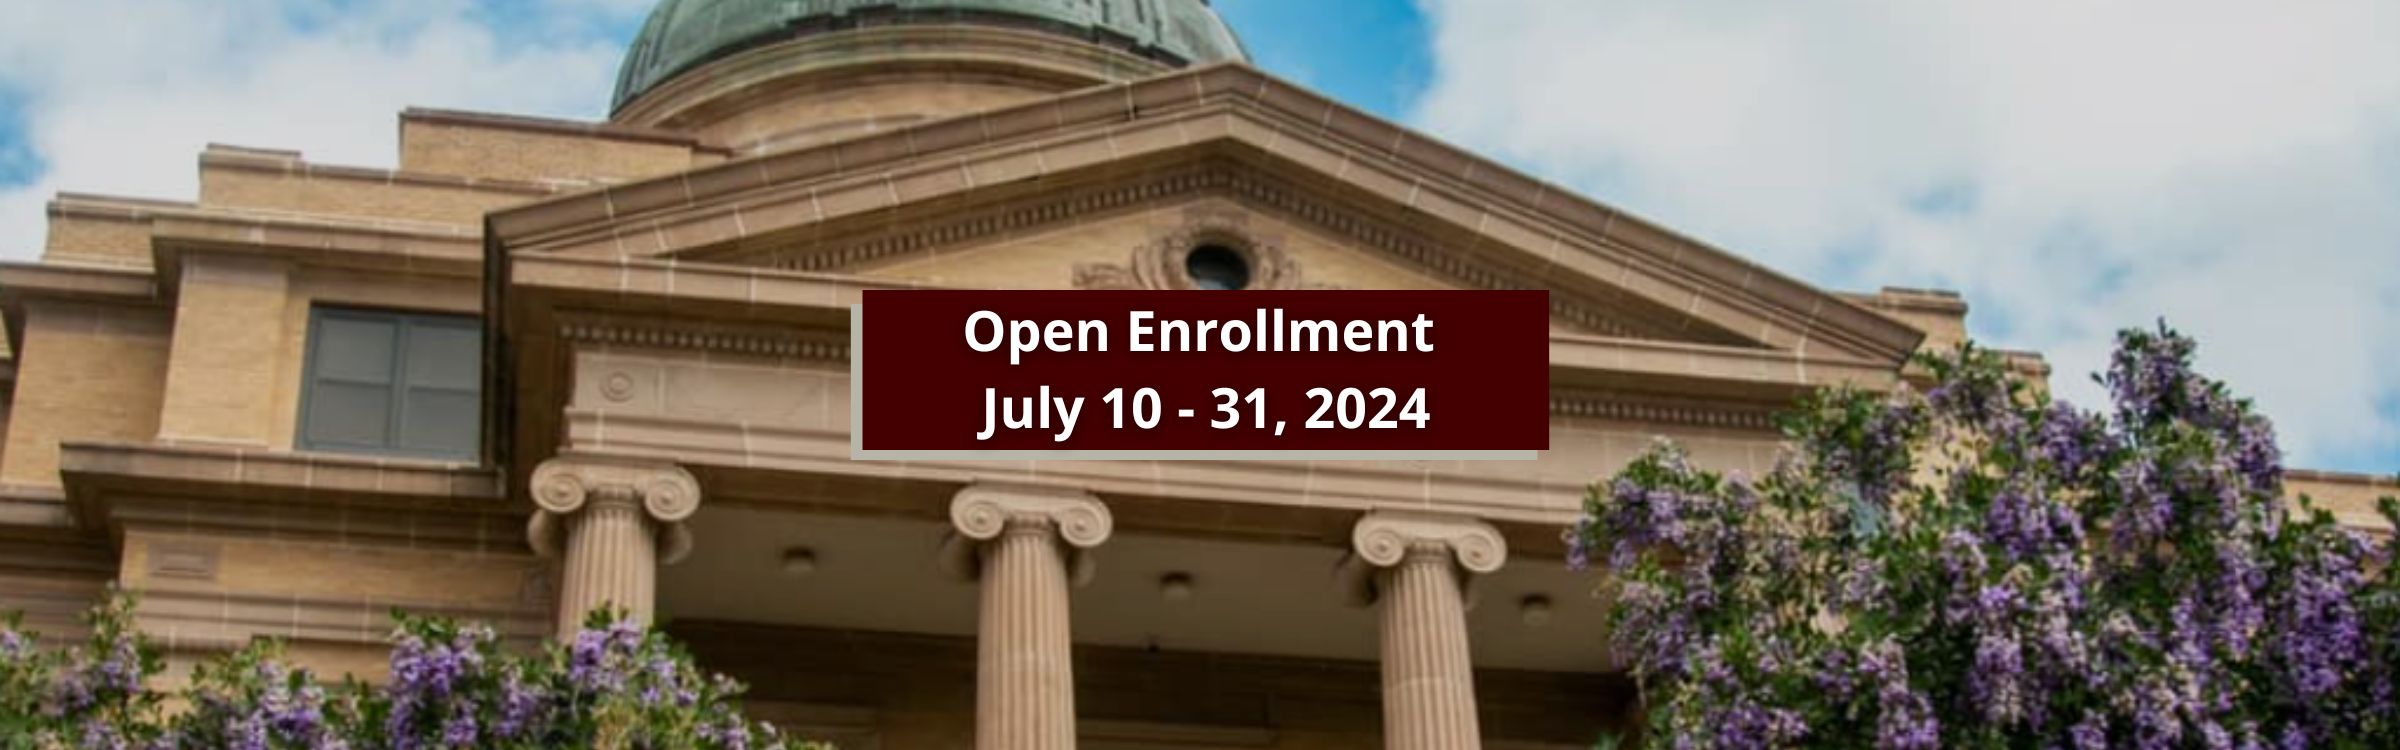 Open Enrollment July 10 - 31, 2024